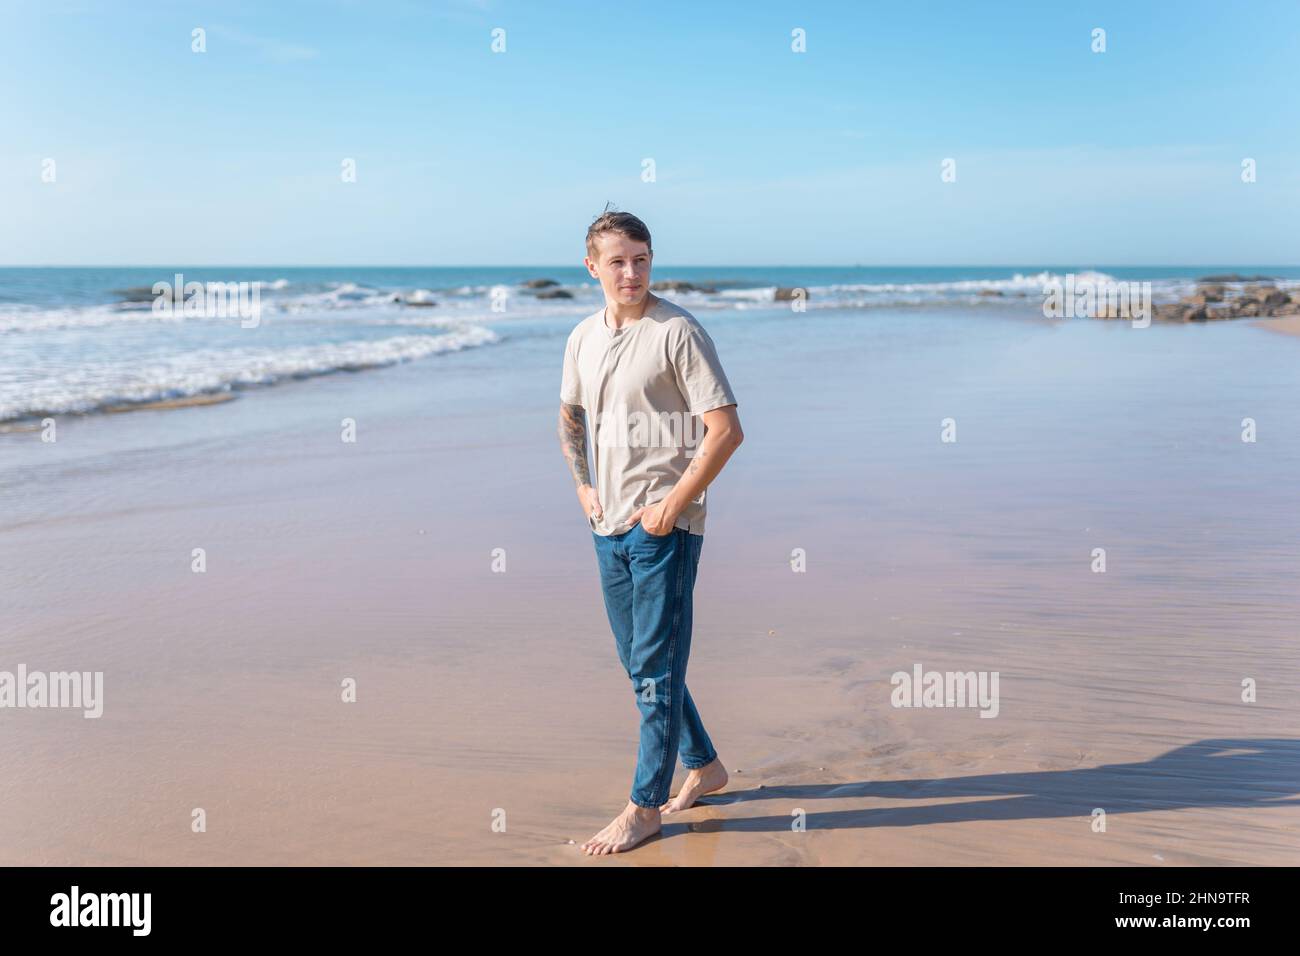 Attraente giovane uomo caucasico con tatuaggio a braccio pieno in abbigliamento casual camminando sulla spiaggia a piedi nudi. Vista panoramica sull'oceano, mattina. Foto di alta qualità Foto Stock